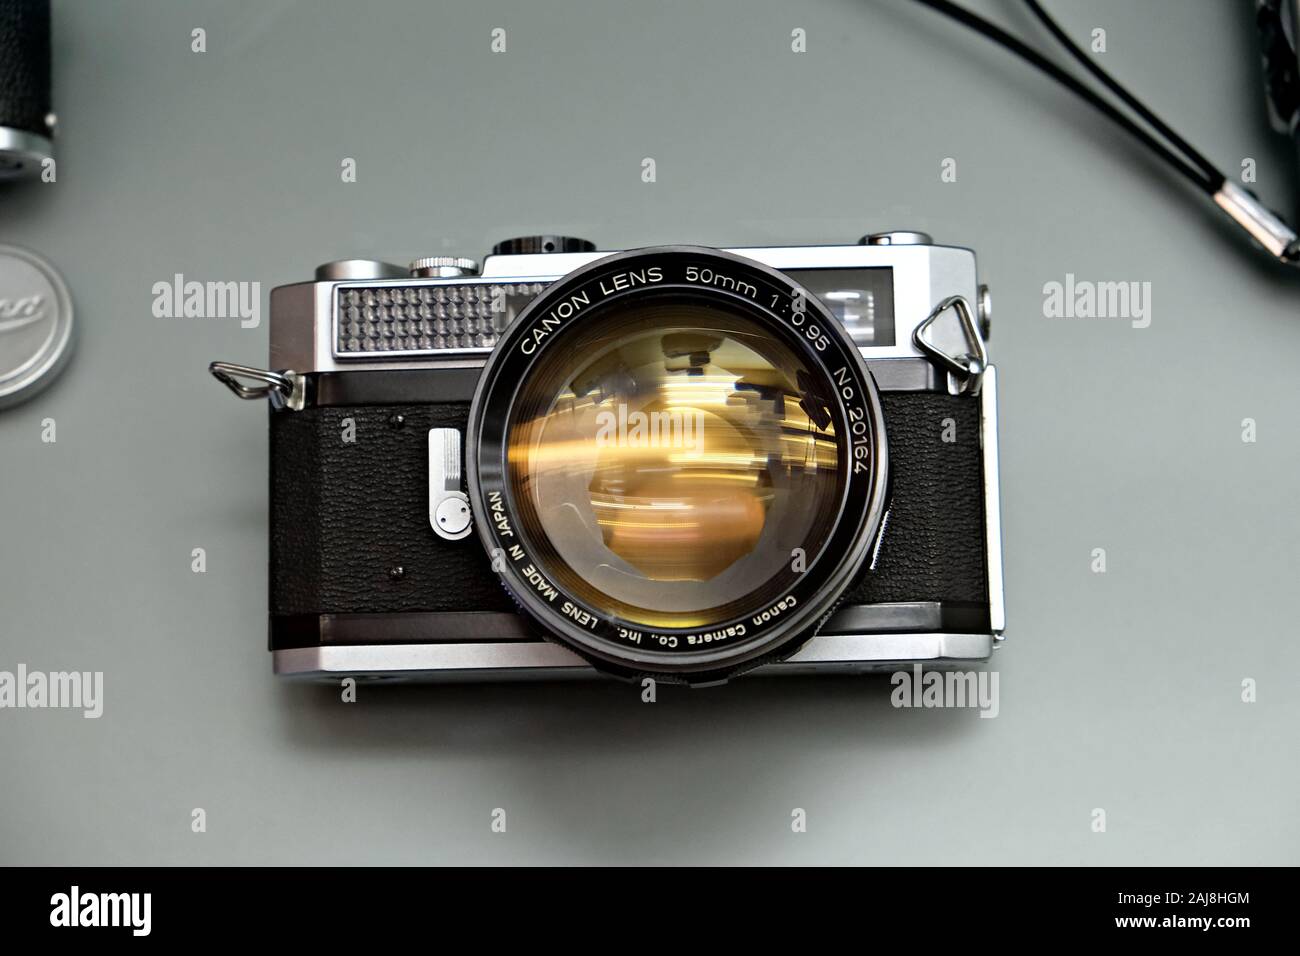 カメラ フィルムカメラ Canon analog camera hi-res stock photography and images - Alamy